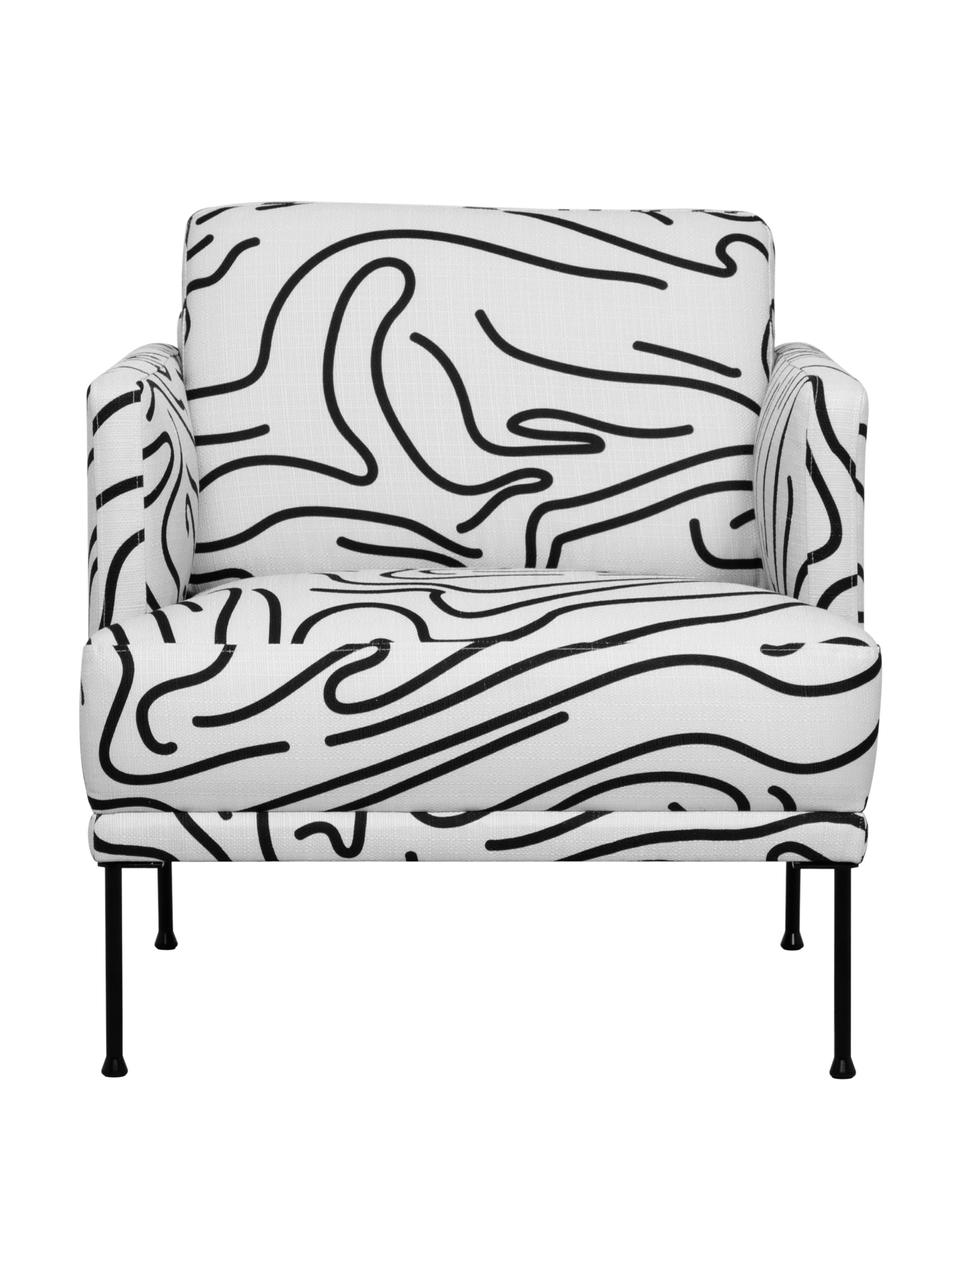 Gemusterter Sessel Fluente mit Metall-Füssen, Bezug: 100% Polyester Der hochwe, Gestell: Massives Kiefernholz, Webstoff Weiss/Schwarz, B 74 x T 85 cm